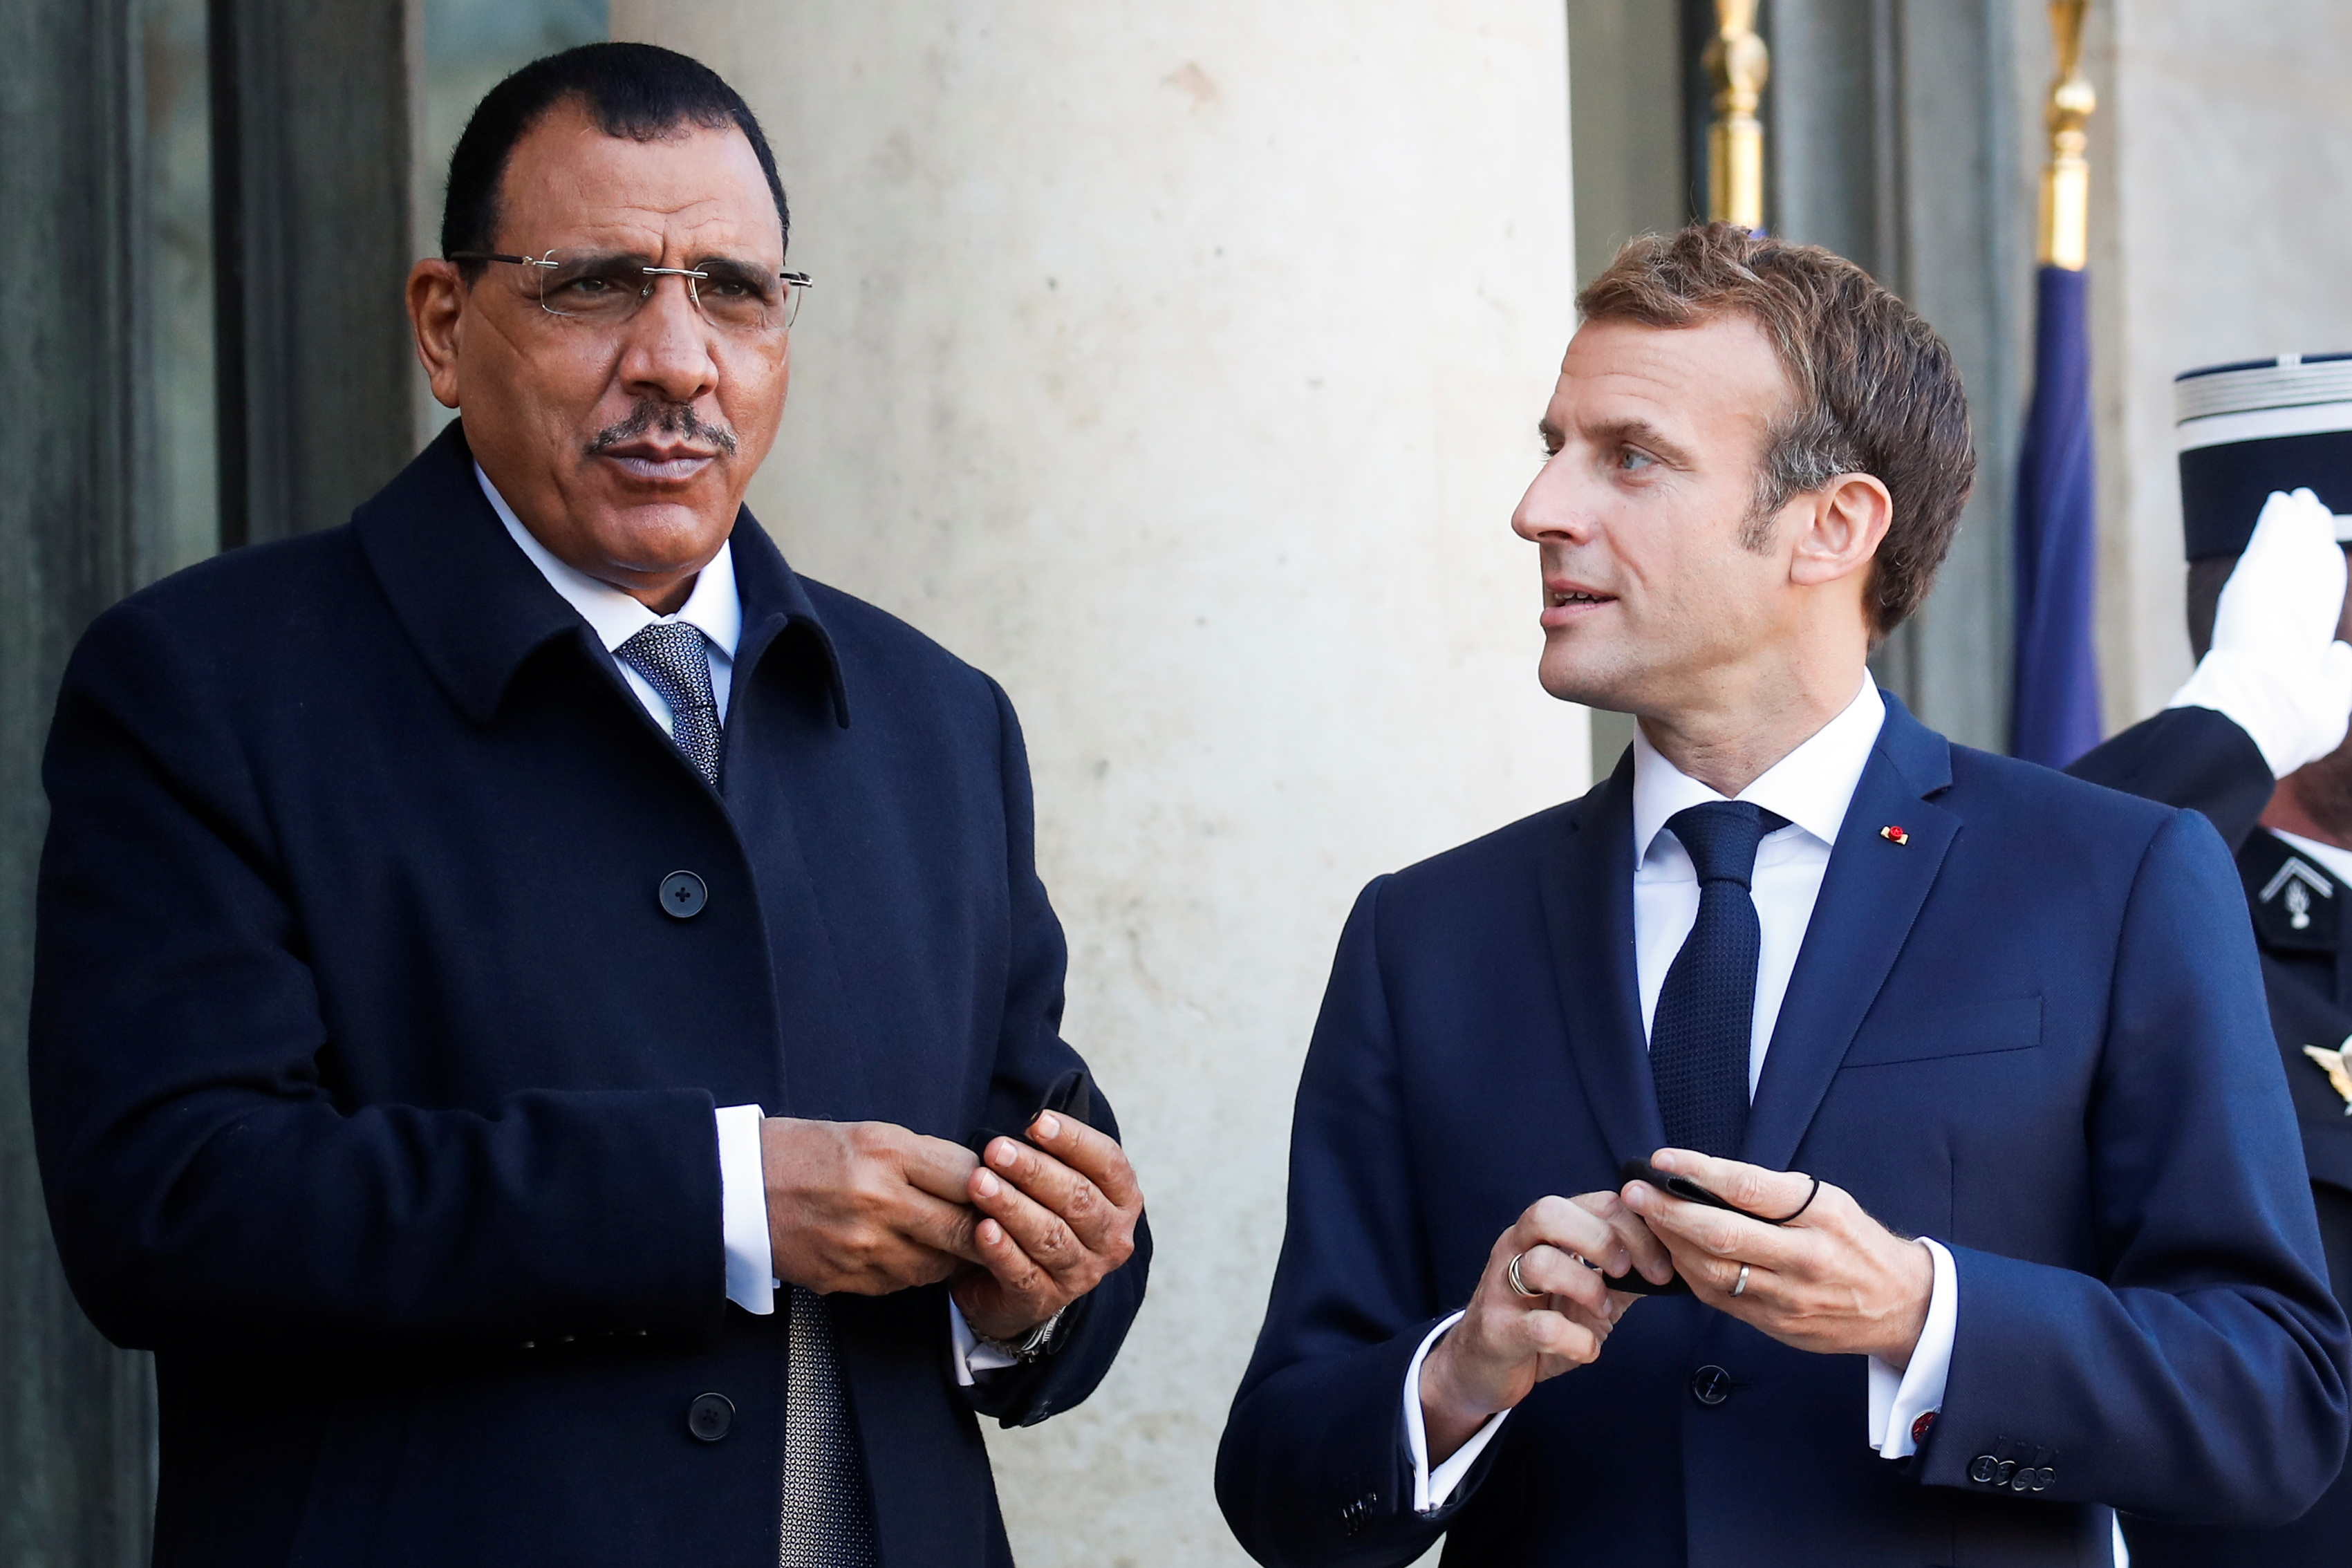 Macron meets Sahel region heads of states, in Paris